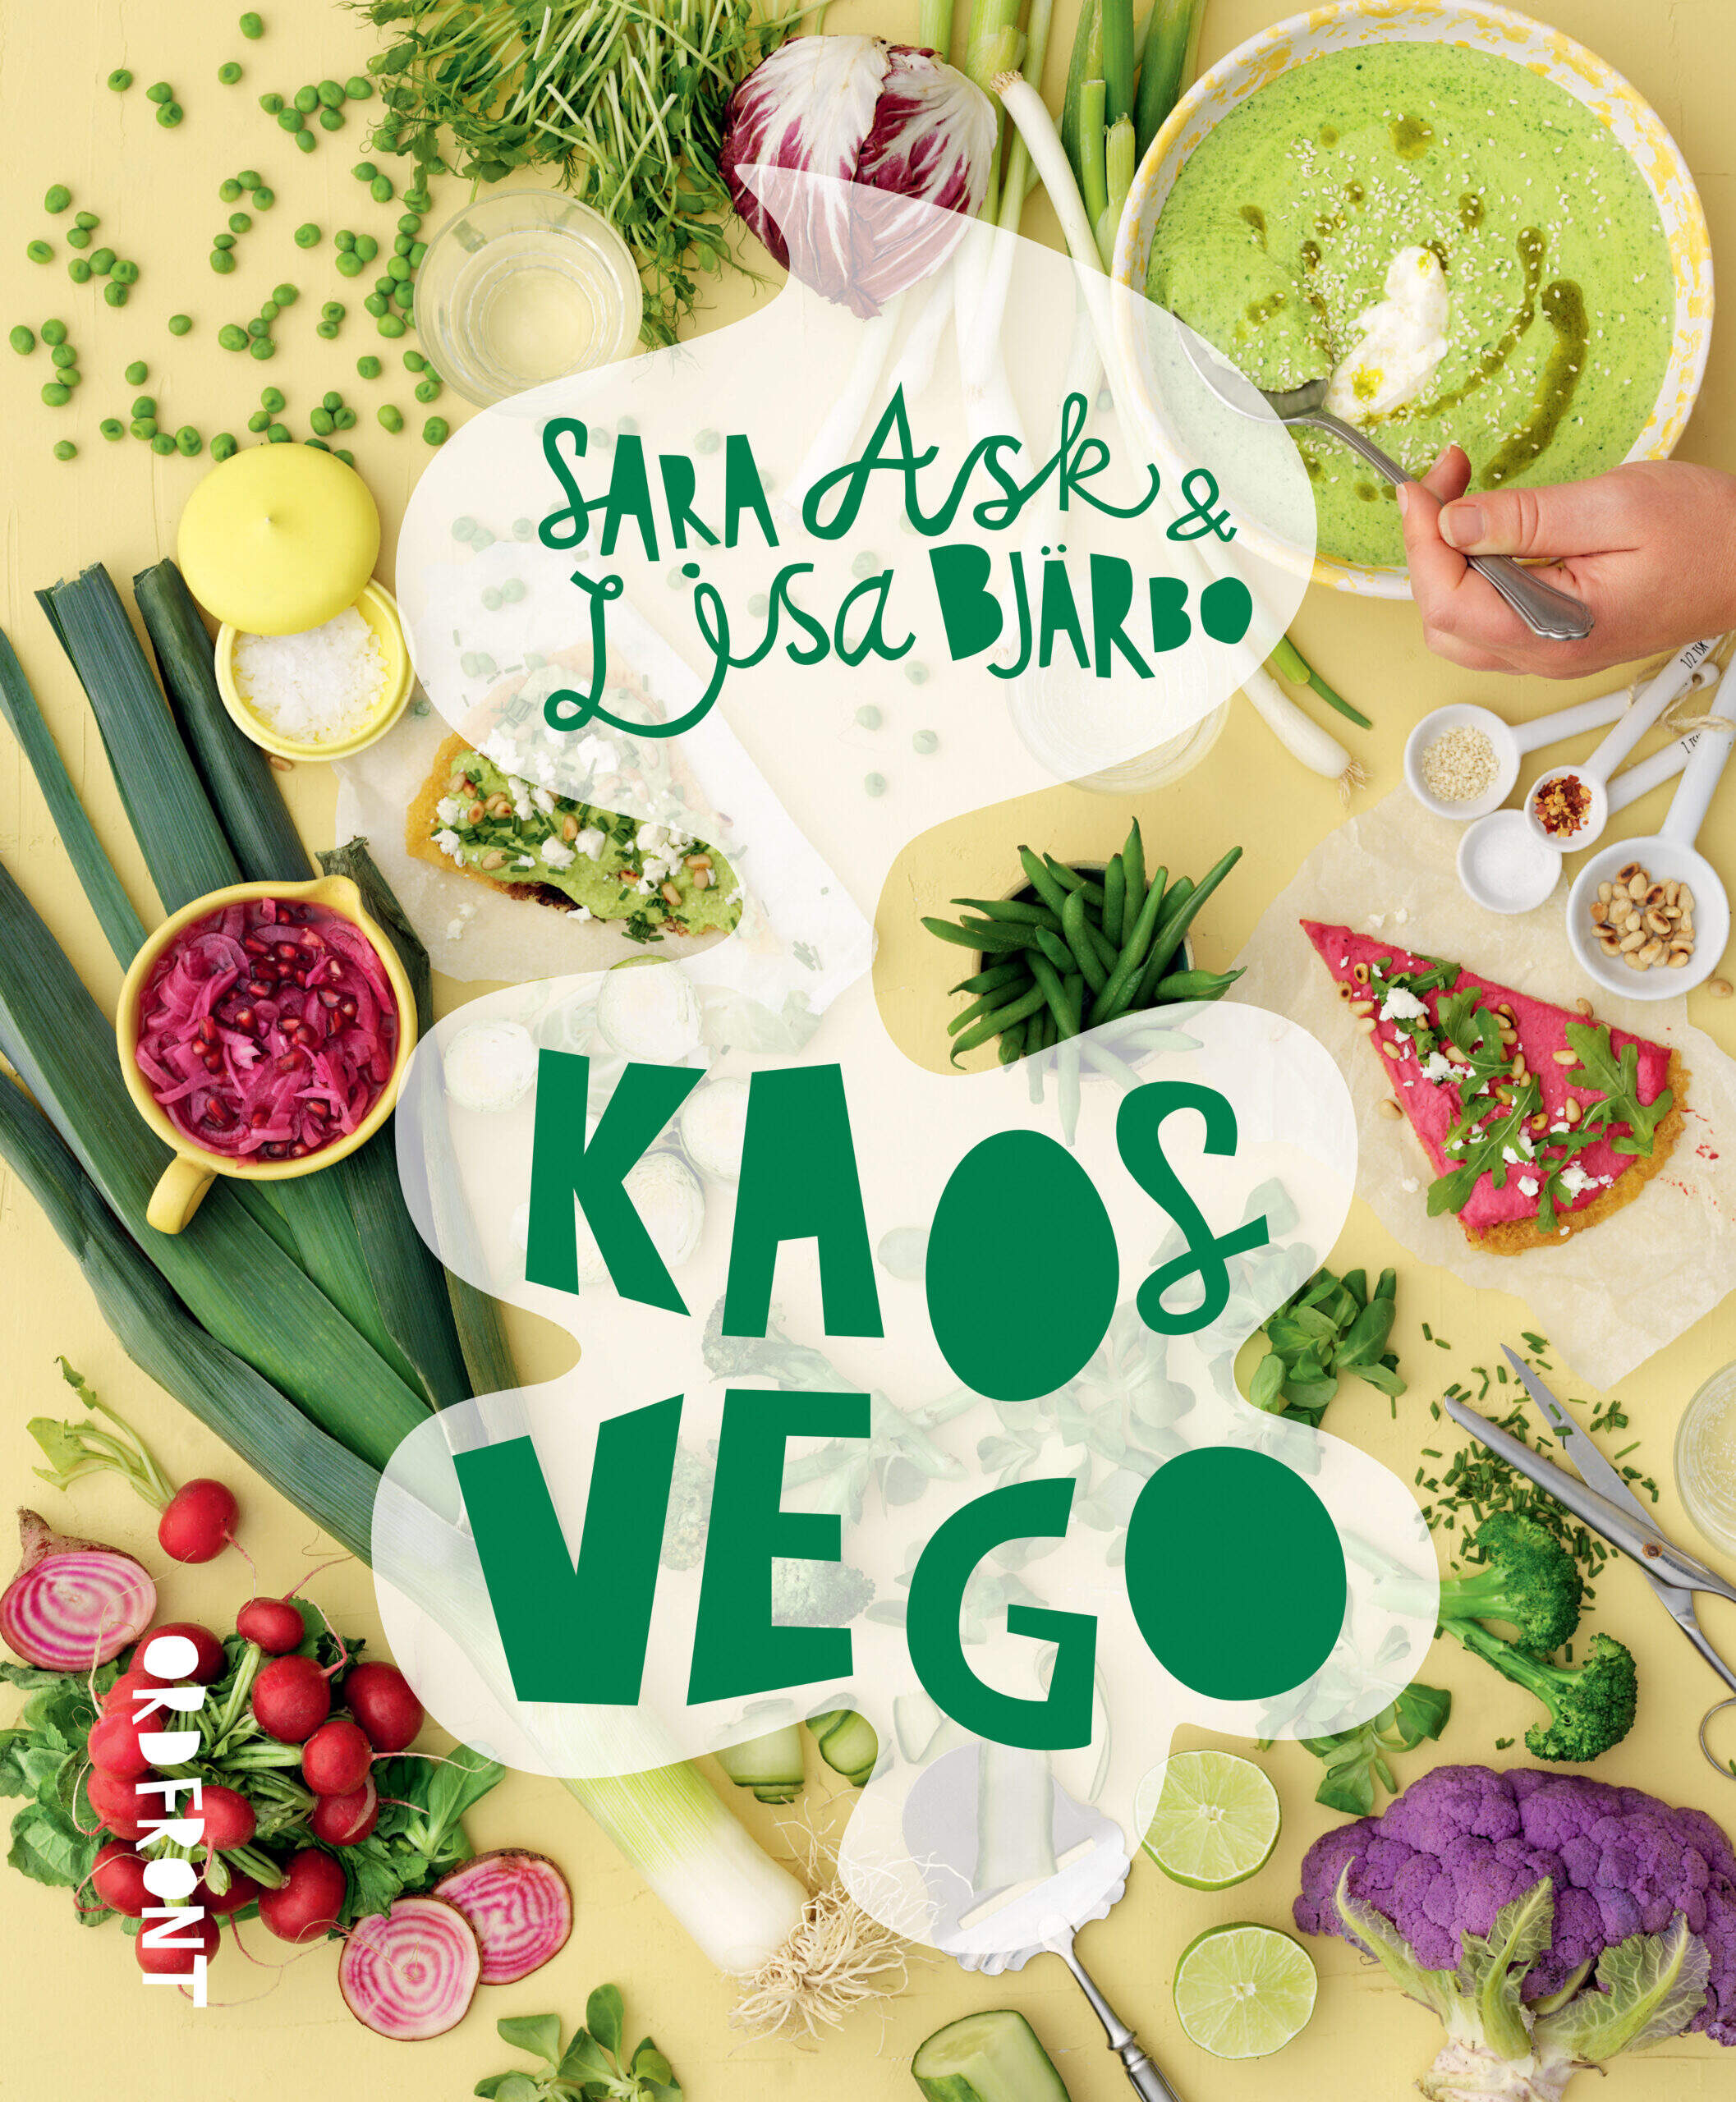 Bokomslag av kokboken Kaosvego av Sara Ask och Lisa Bjärbo